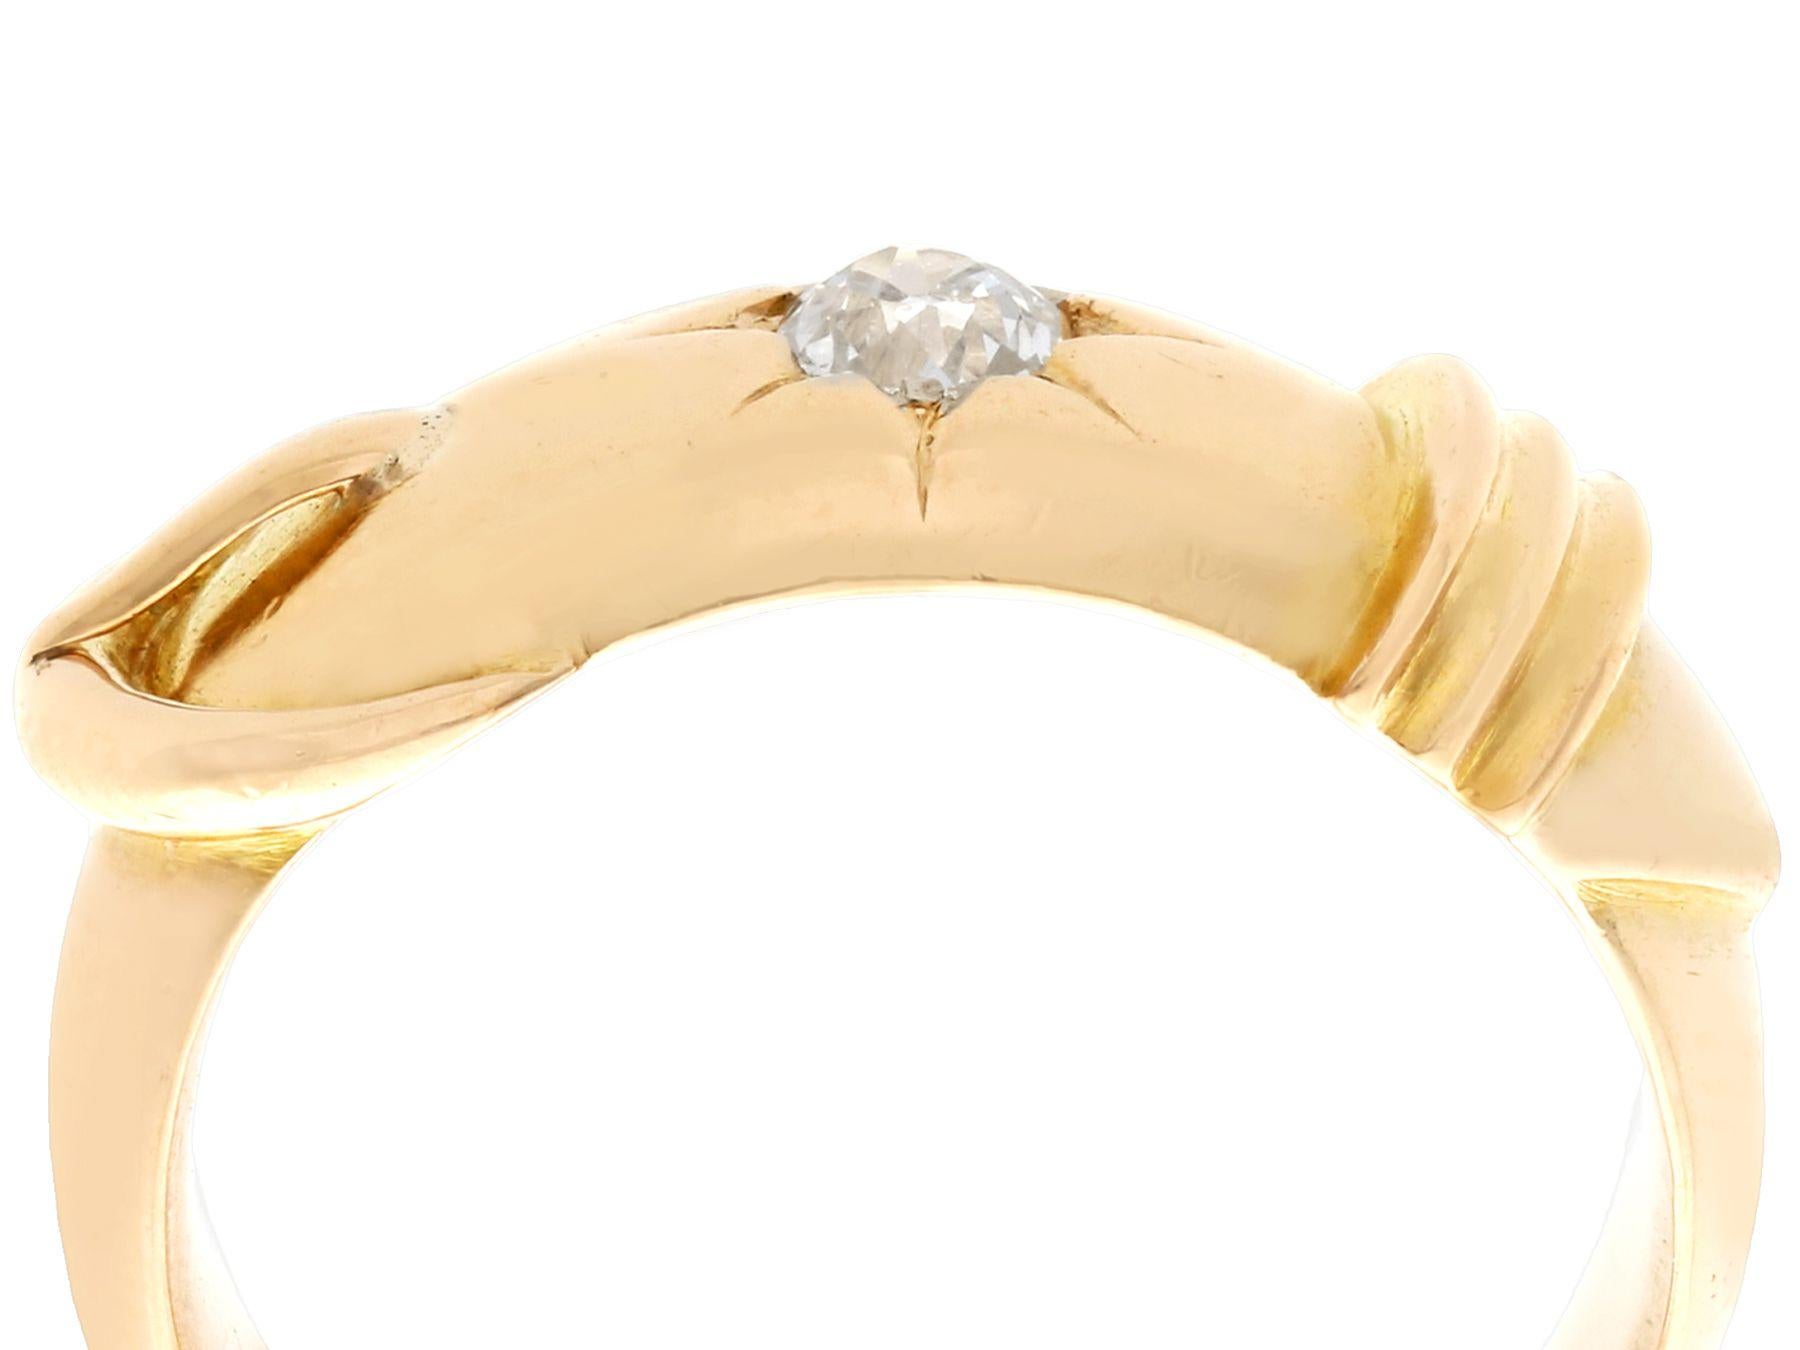 Eine feine und beeindruckende antike 0,38 Karat Diamant und 18k Gelbgold Kleid Ring in Form eines Gürtels und Schnalle; Teil unserer vielfältigen antiken Schmuck und Nachlass Schmuck Sammlungen.

Dieser feine und beeindruckende Diamantring mit